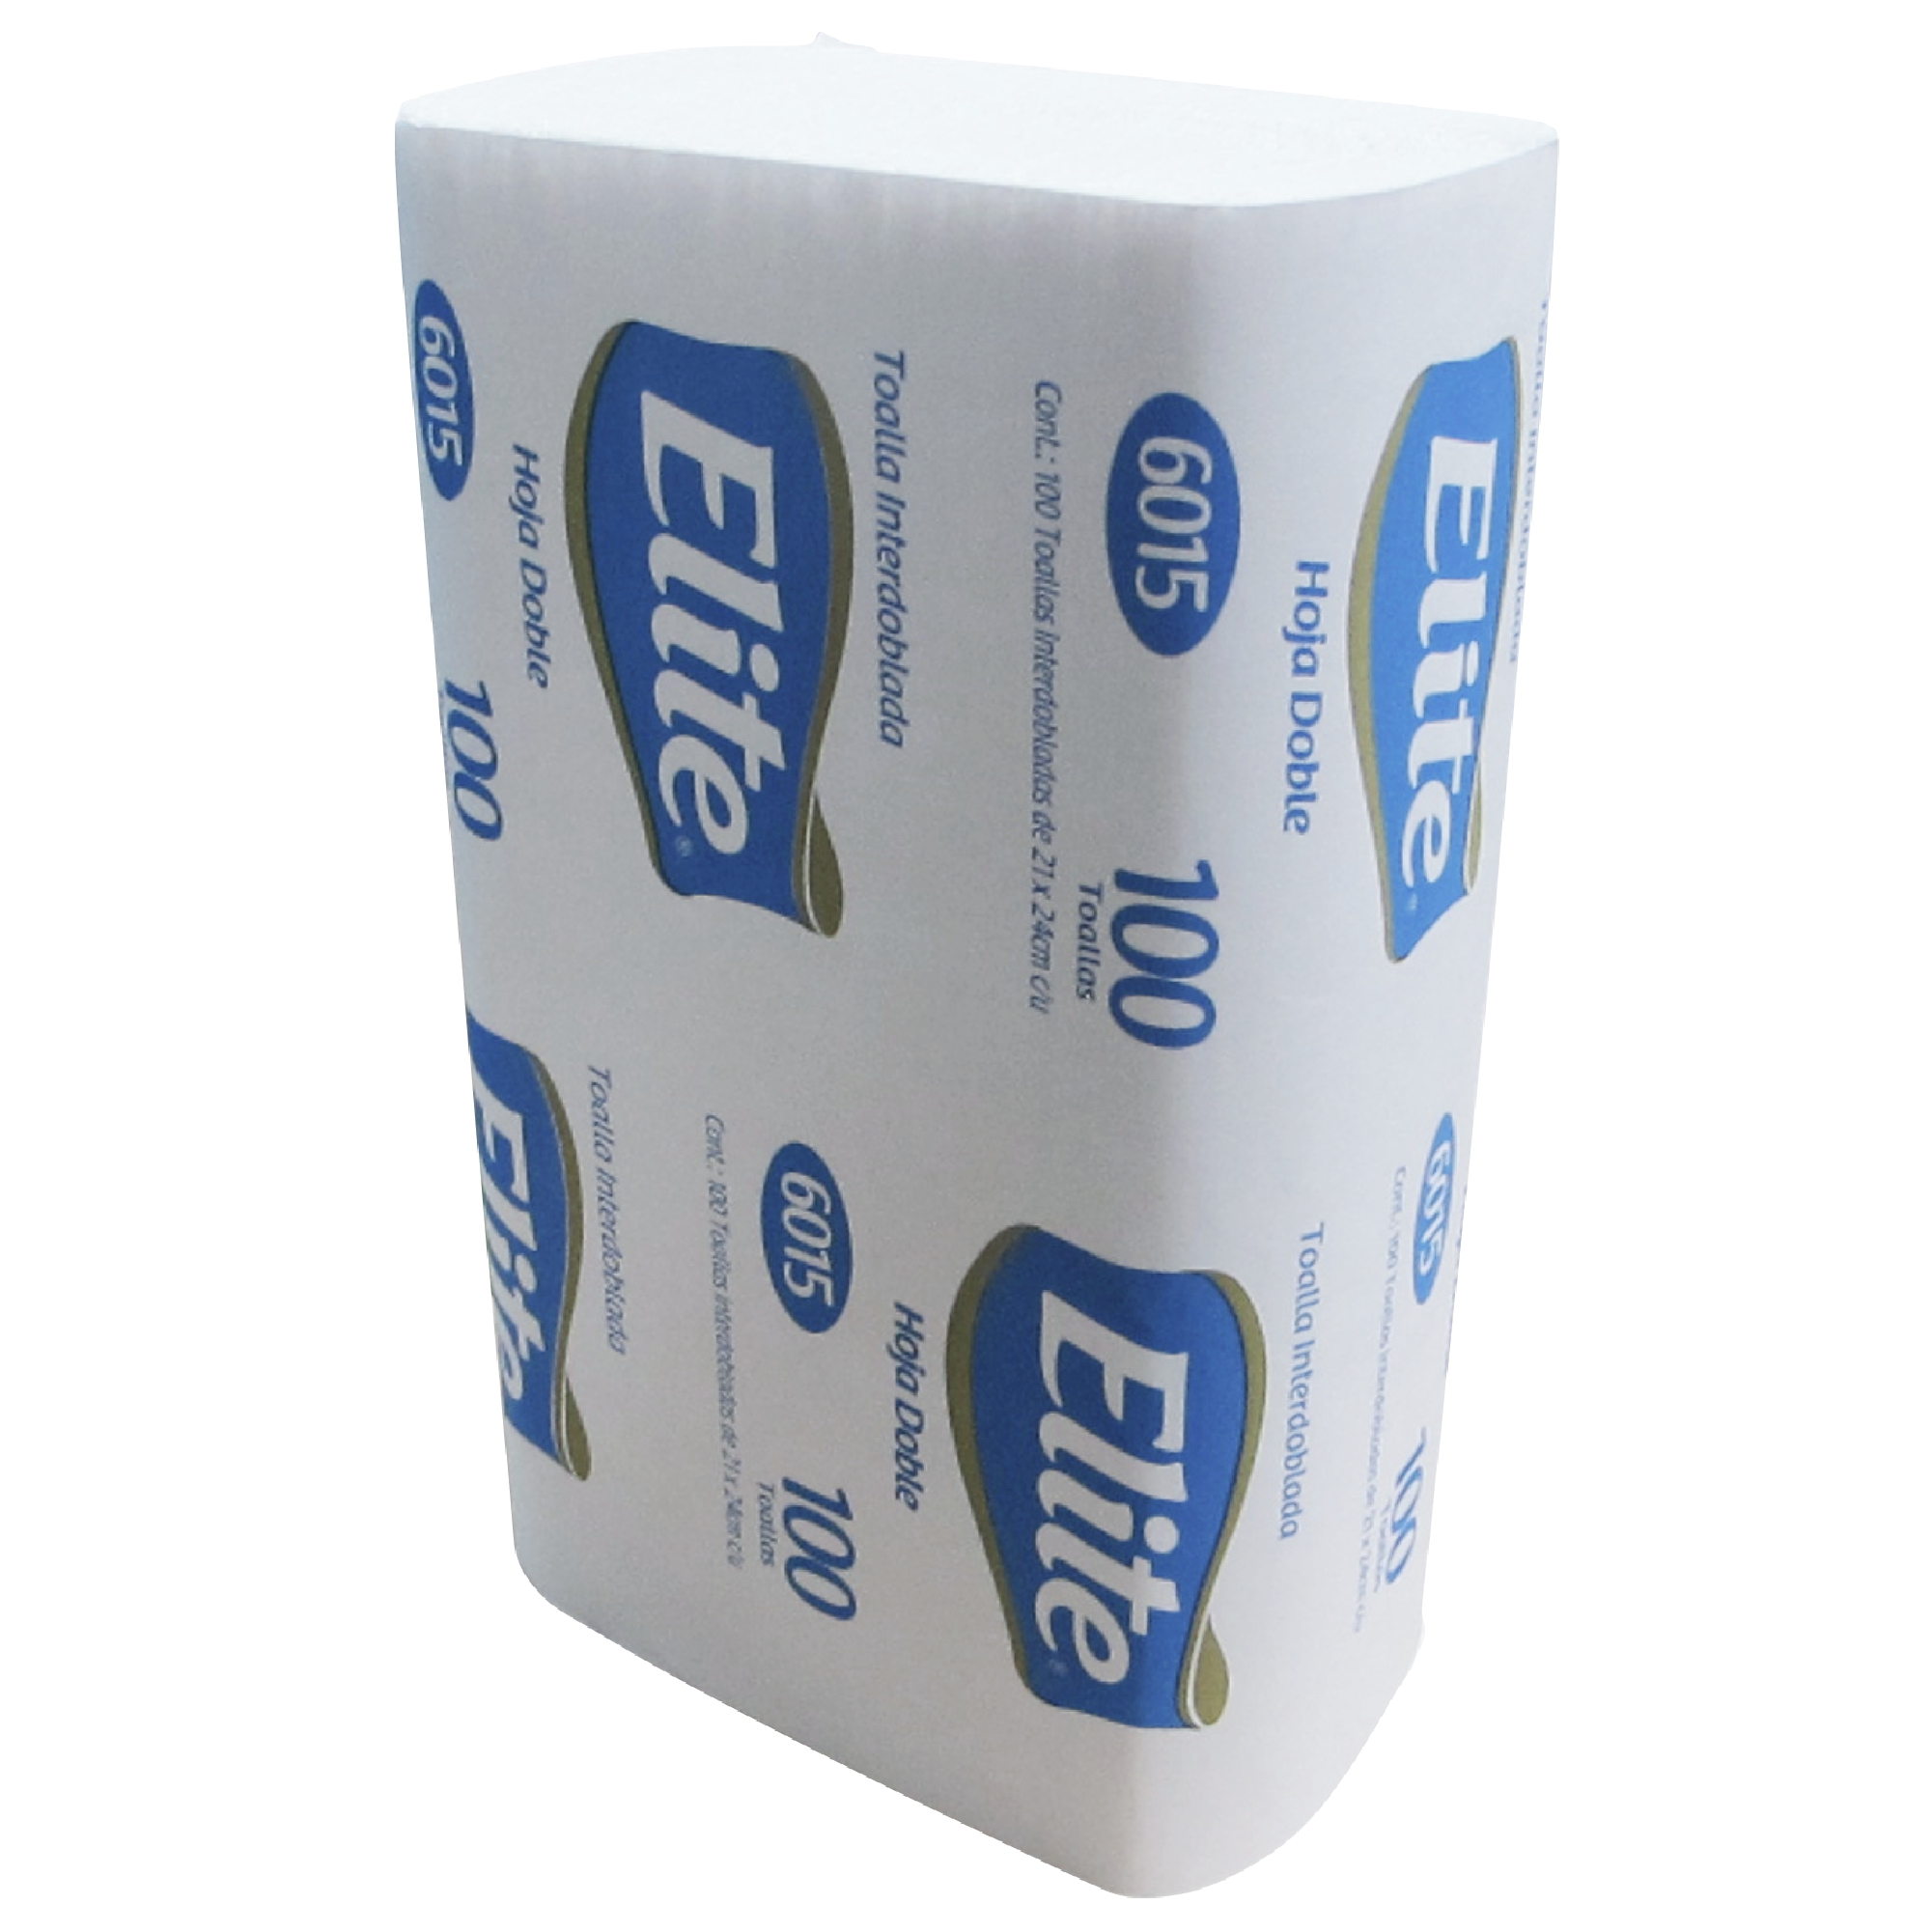 Elite 6015 toalla Interdoblada hoja doble color blanca 21 x 24, caja con 20 paquetes de 100 piezas cada uno